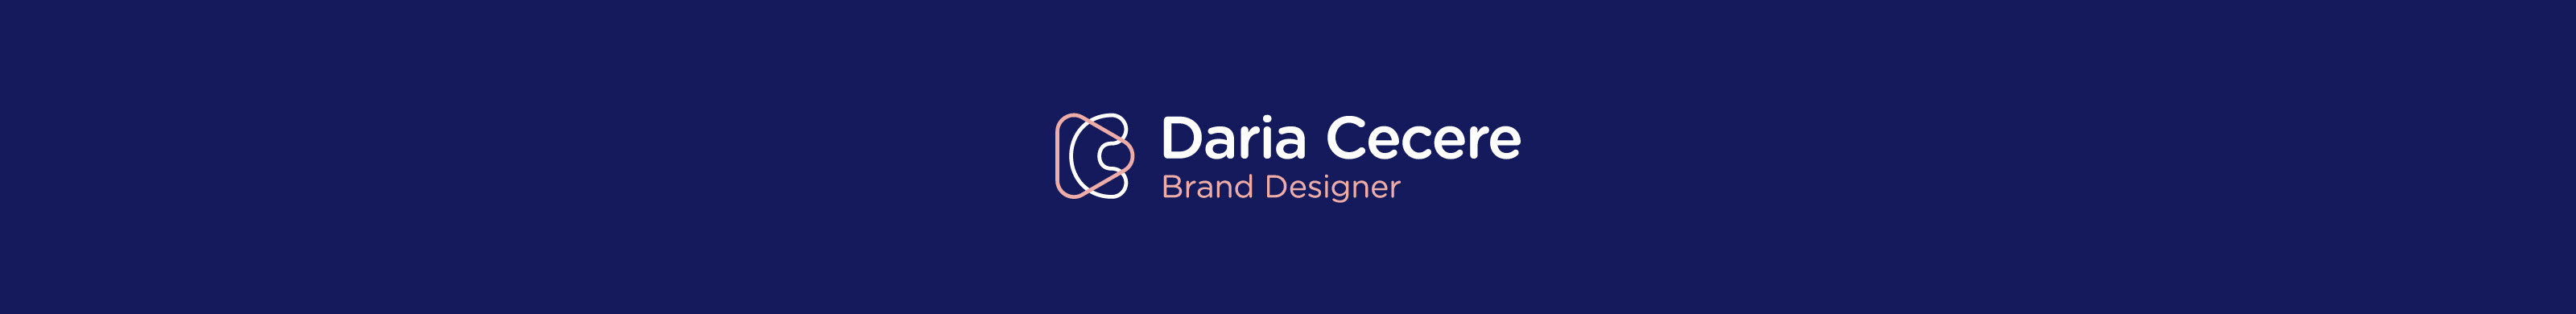 Daria Cecere's profile banner